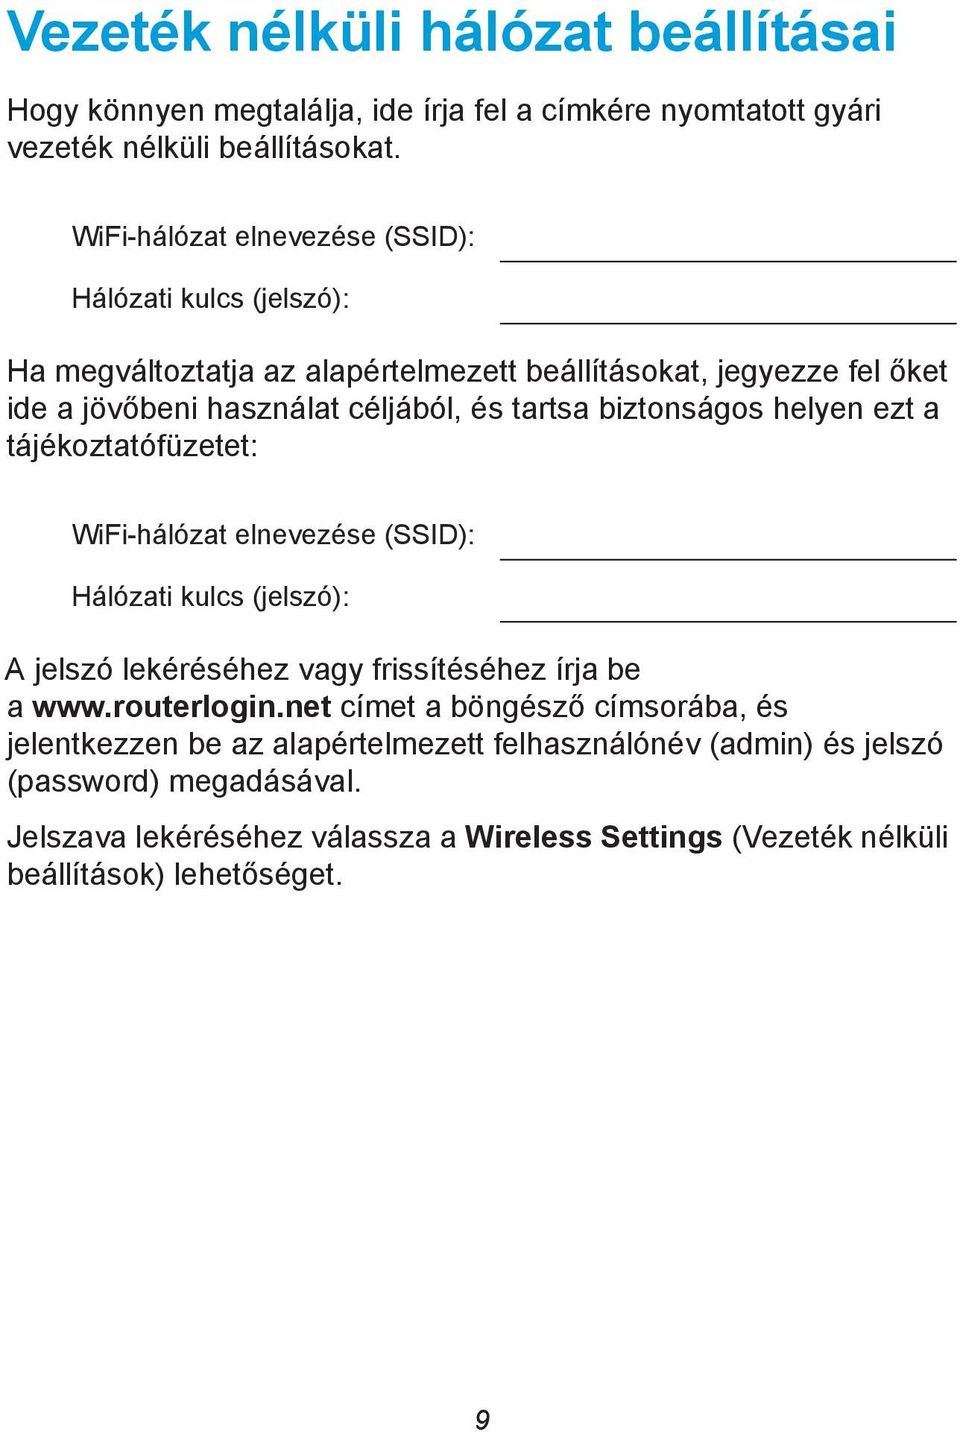 biztonságos helyen ezt a tájékoztatófüzetet: WiFi-hálózat elnevezése (SSID): Hálózati kulcs (jelszó): A jelszó lekéréséhez vagy frissítéséhez írja be a www.routerlogin.